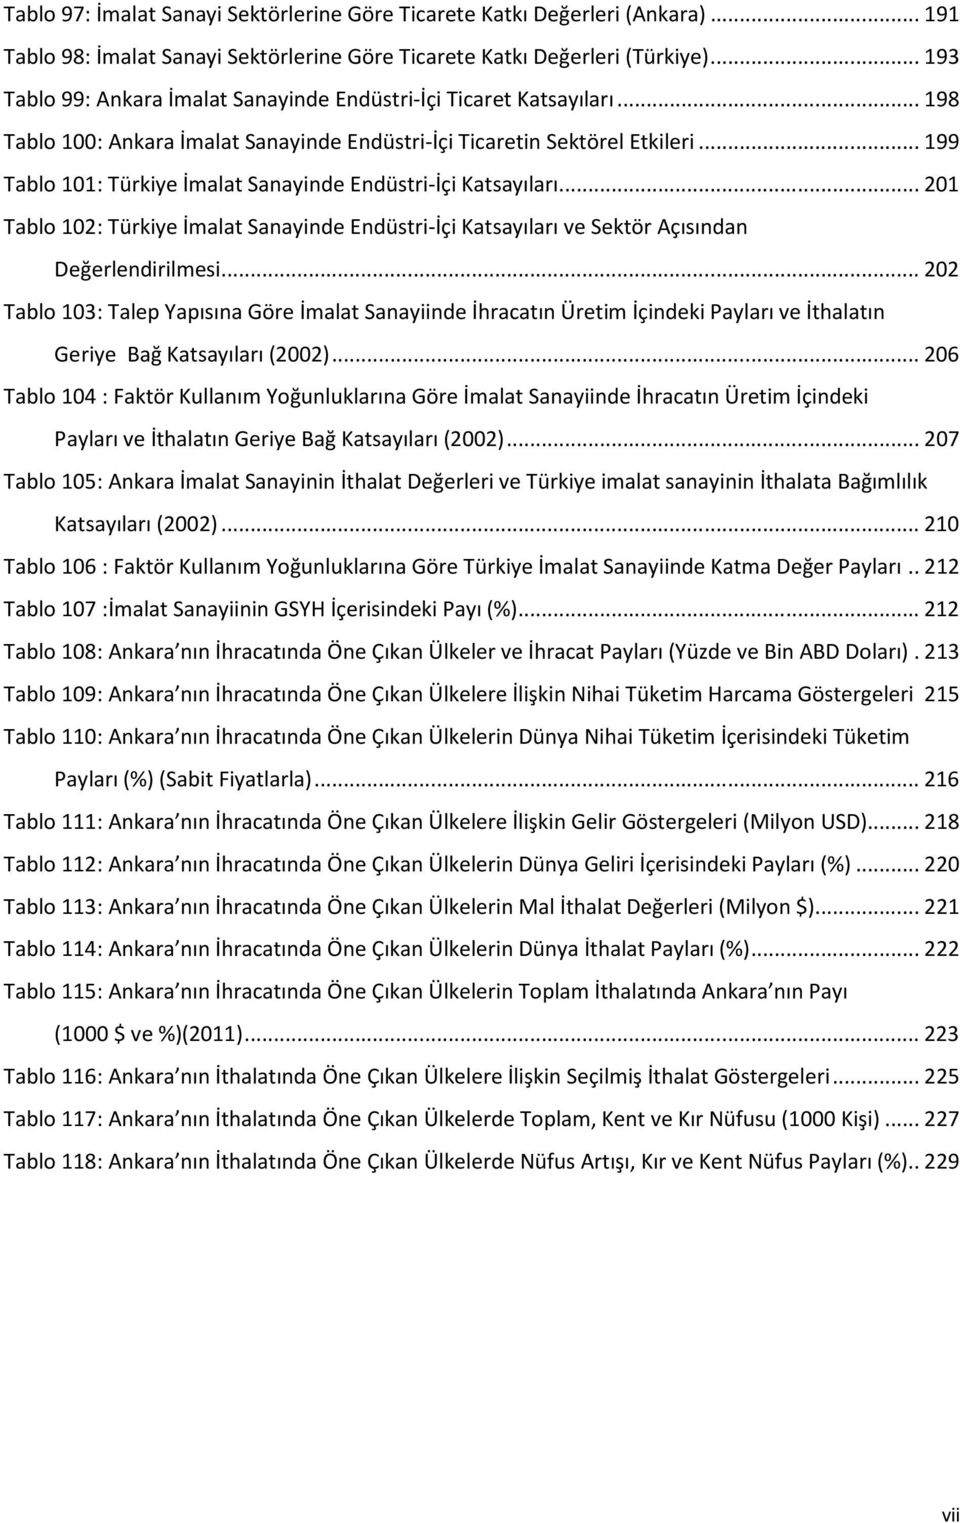 .. 199 Tablo 101: Türkiye İmalat Sanayinde Endüstri-İçi Katsayıları... 201 Tablo 102: Türkiye İmalat Sanayinde Endüstri-İçi Katsayıları ve Sektör Açısından Değerlendirilmesi.